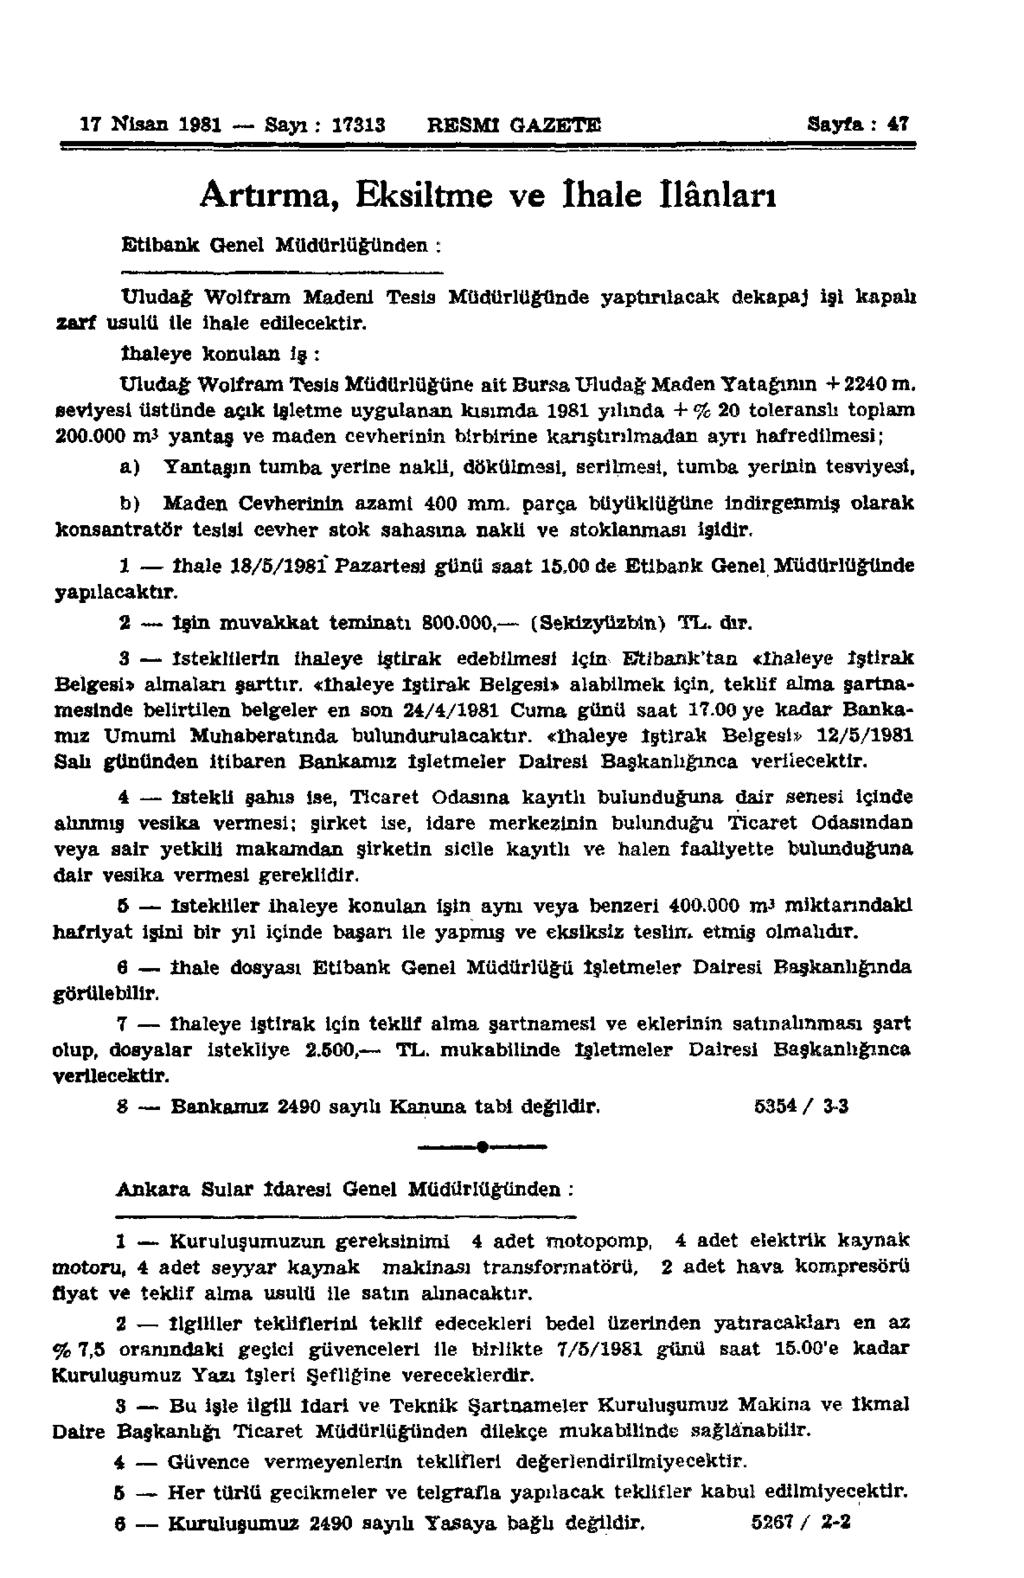 17 Nisan 1981 Sayı: 17313 RESMİ GAZETE Sayfa: 47 Artırma, Eksiltme ve ihale ilânları Etibank Genel Müdürlüğünden : Uludağ Wolfram Madeni Tesis Müdürlüğünde yaptırılacak dekapaj isi kapalı zarf usulü